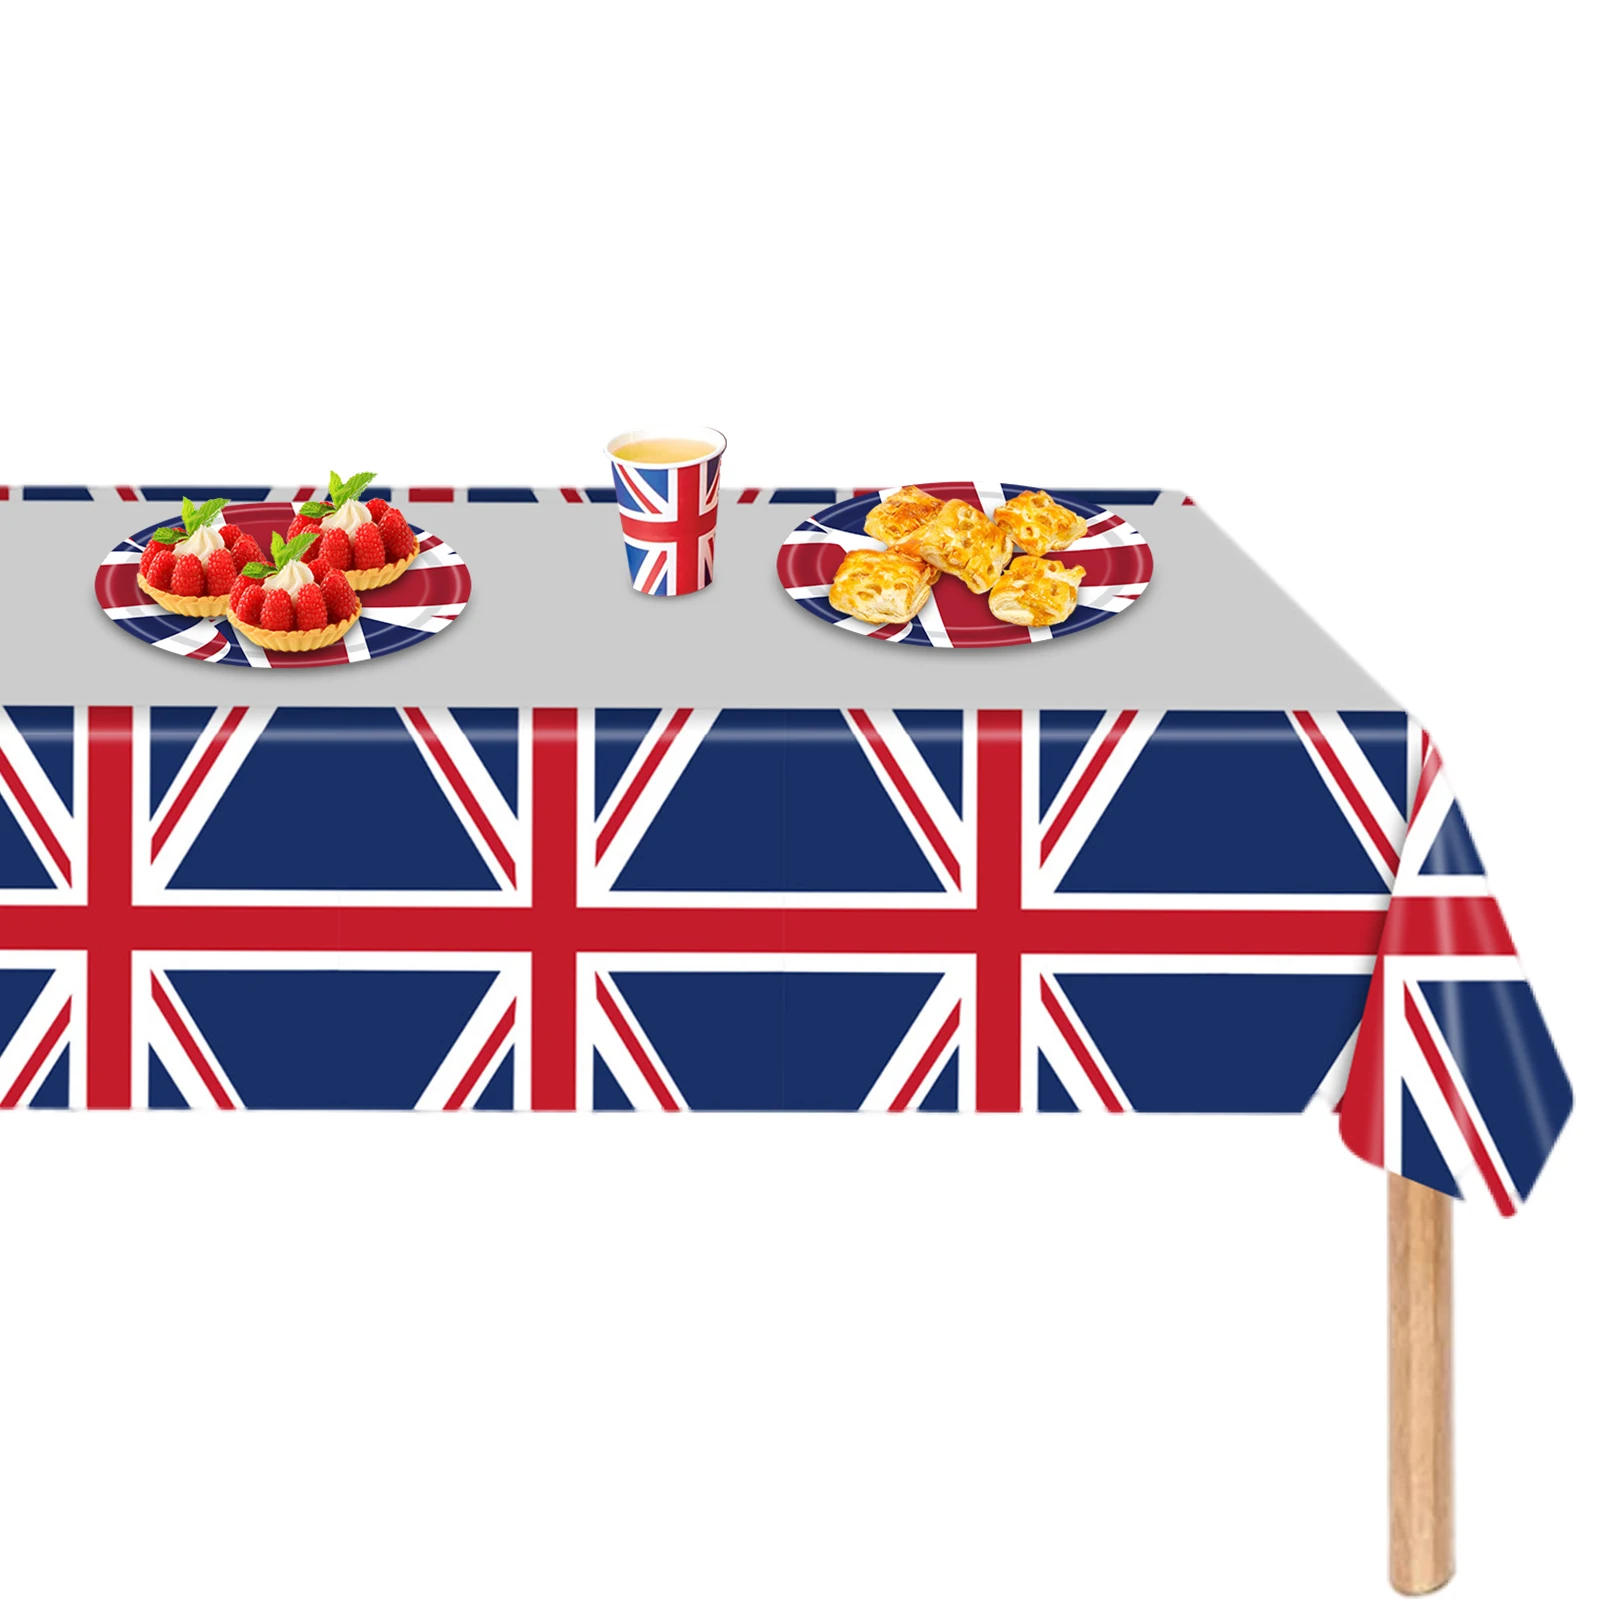 

Покрытие для стола 86inx51in Union Jack, британские патриотические настольные украшения, водонепроницаемая масляная накидка на стол Union Jack